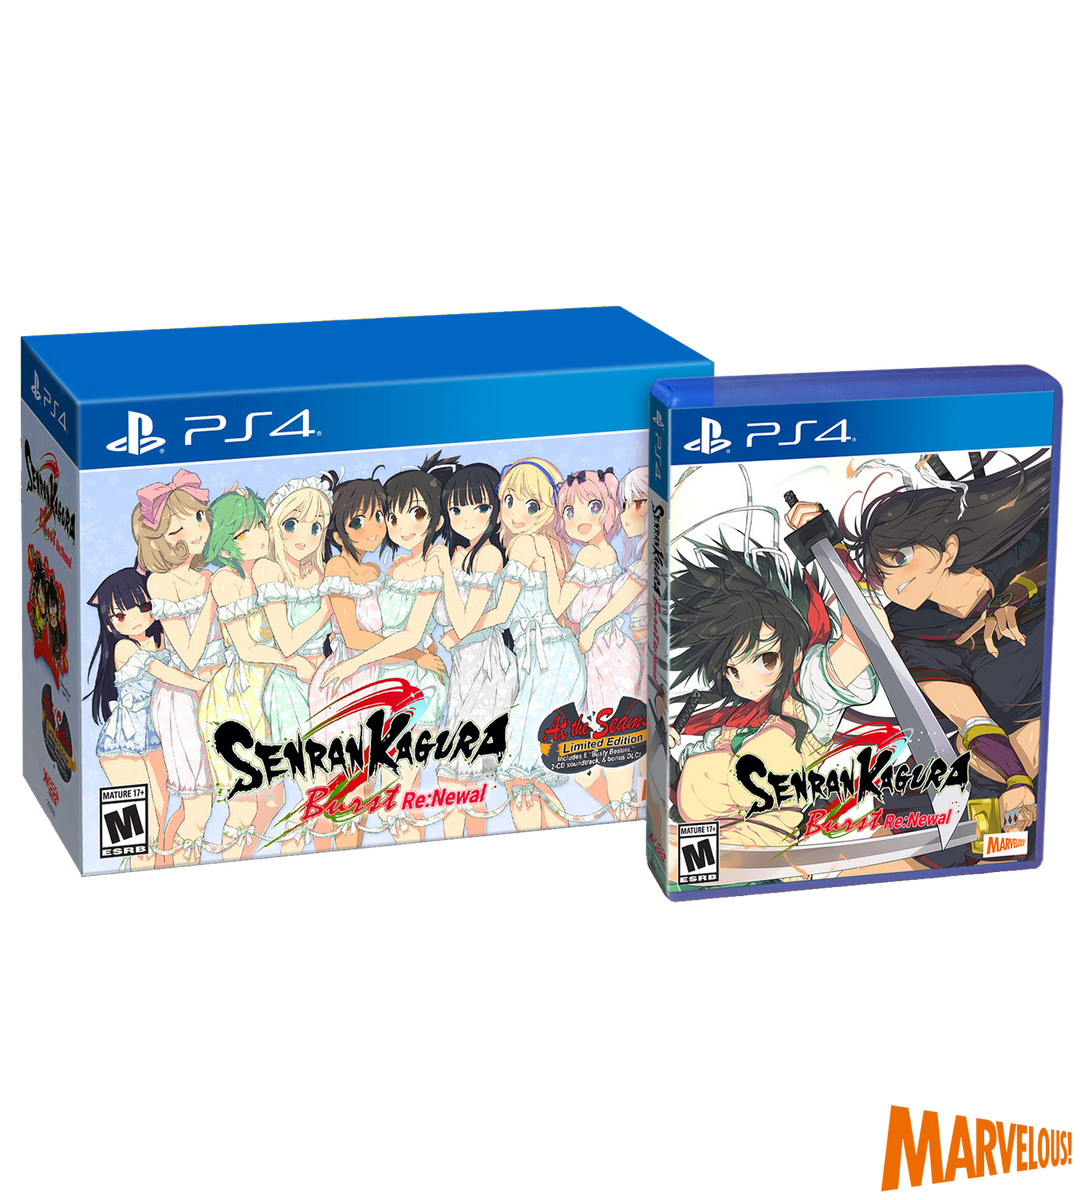 Senran Kagura Burst Re:Newal At the Seams Edition Playstation 4 PS4 Limited  NEW 859716006185